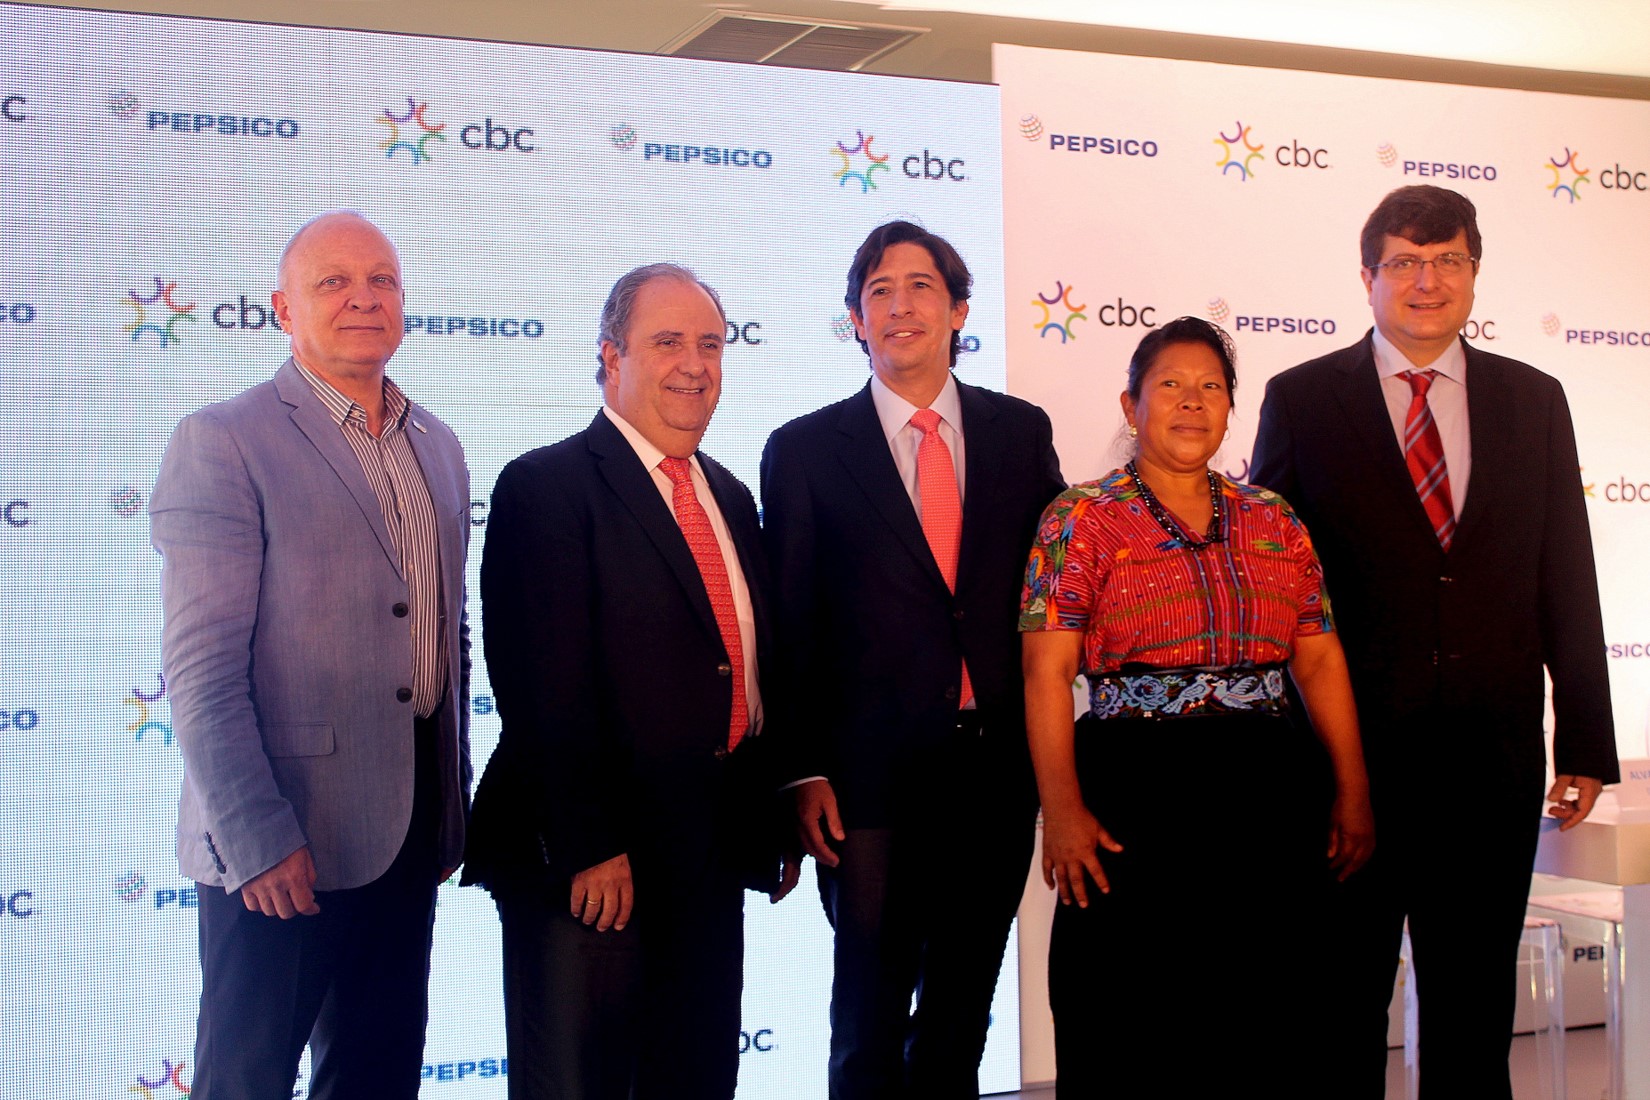 PepsiCo y CBC presentan la alianza “Juntos por el desarrollo sostenible”